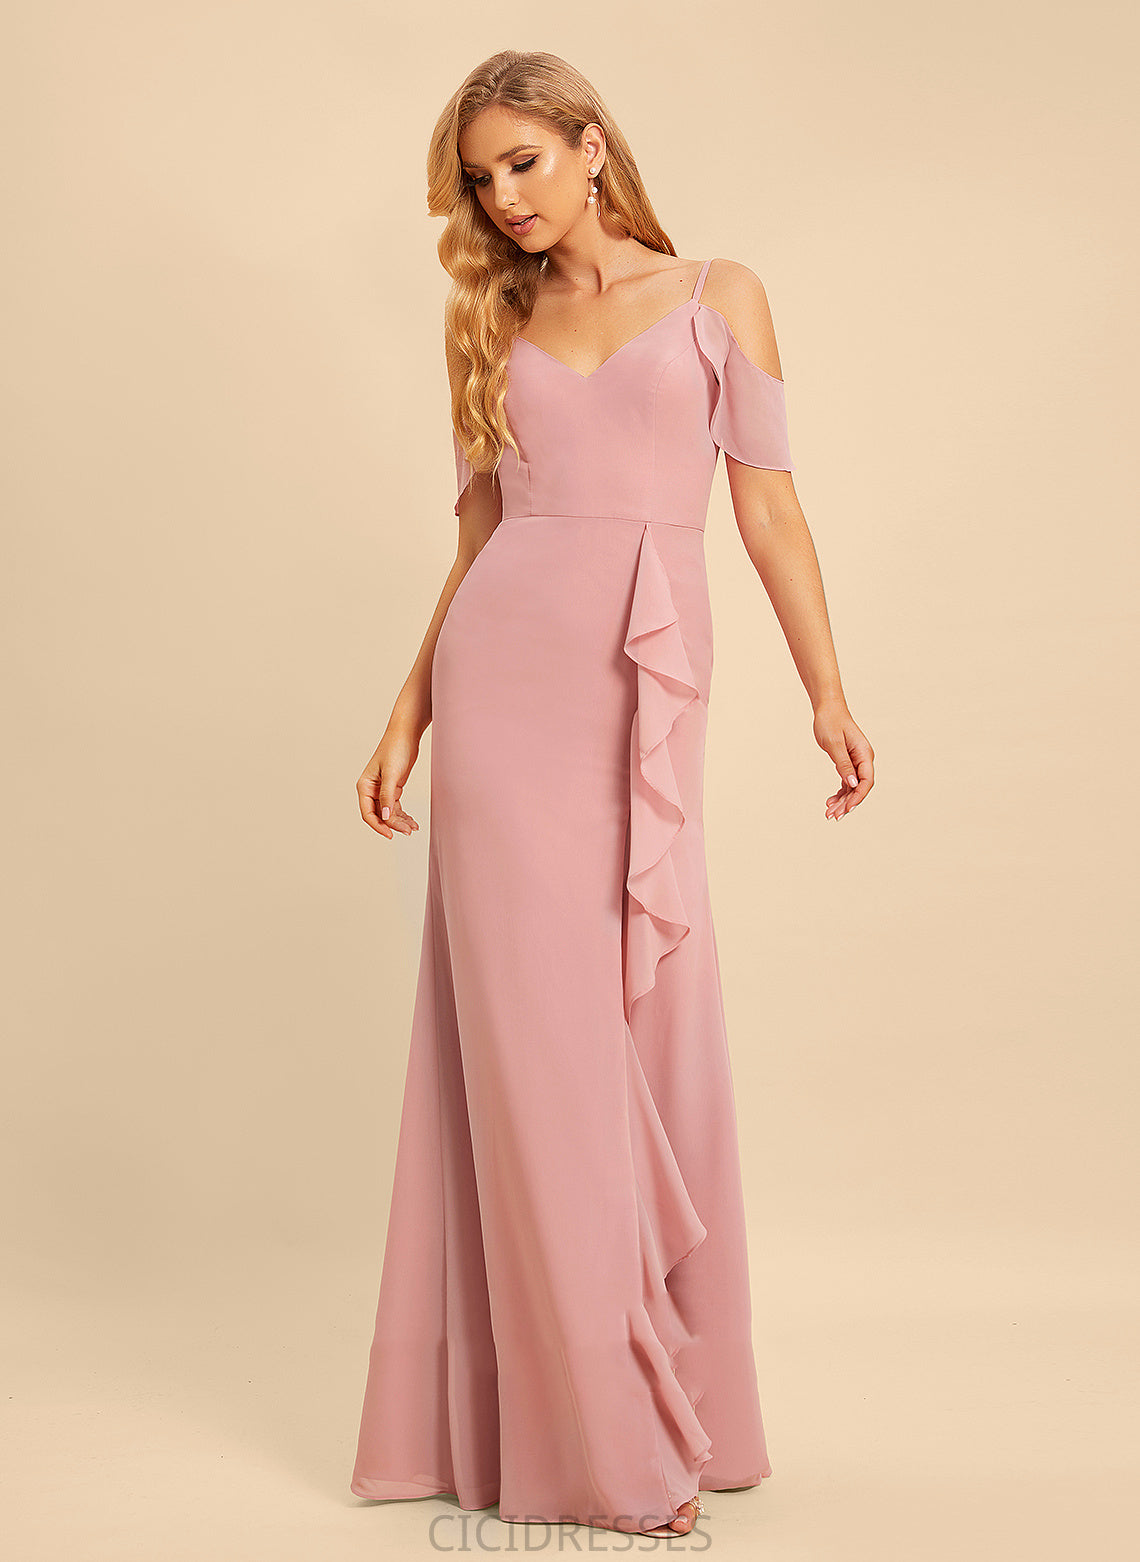 Embellishment V-neck SplitFront Ruffle Fabric Neckline Length Floor-Length A-Line Silhouette Amari Natural Waist Bridesmaid Dresses